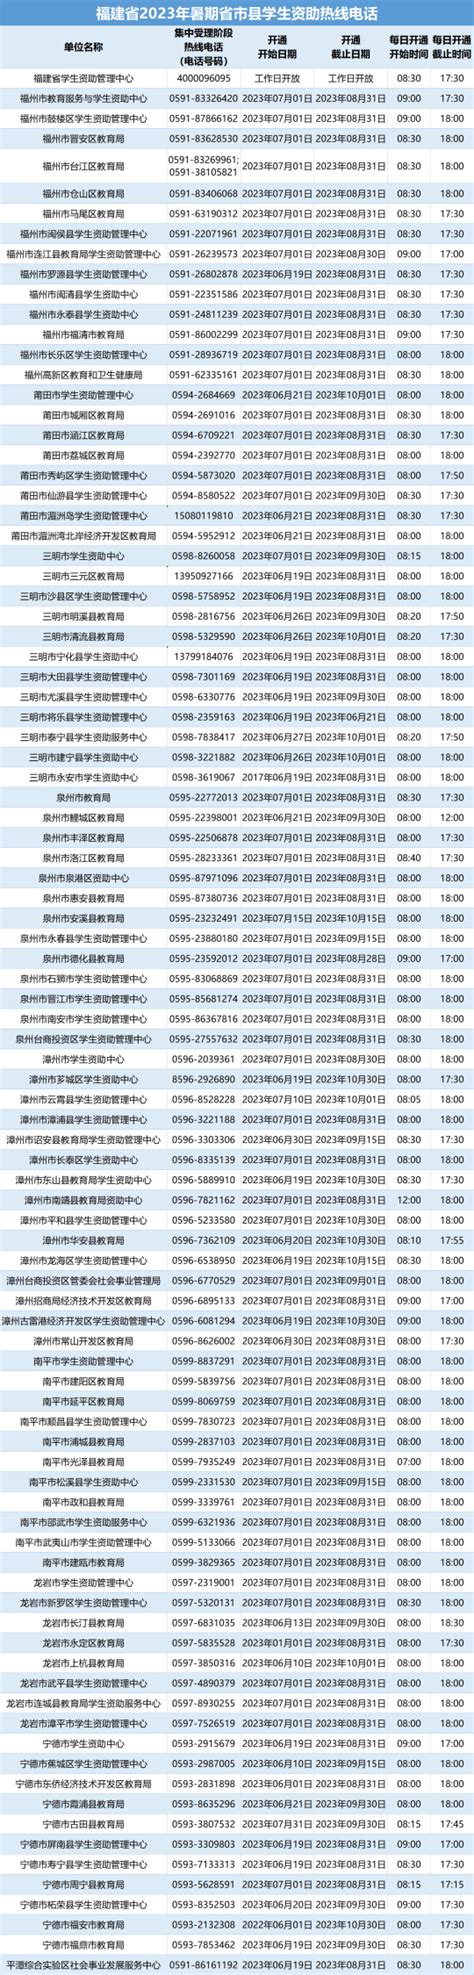 12345政府服务热线今年已接听市民电话56万个_江门新闻_江门广播电视台